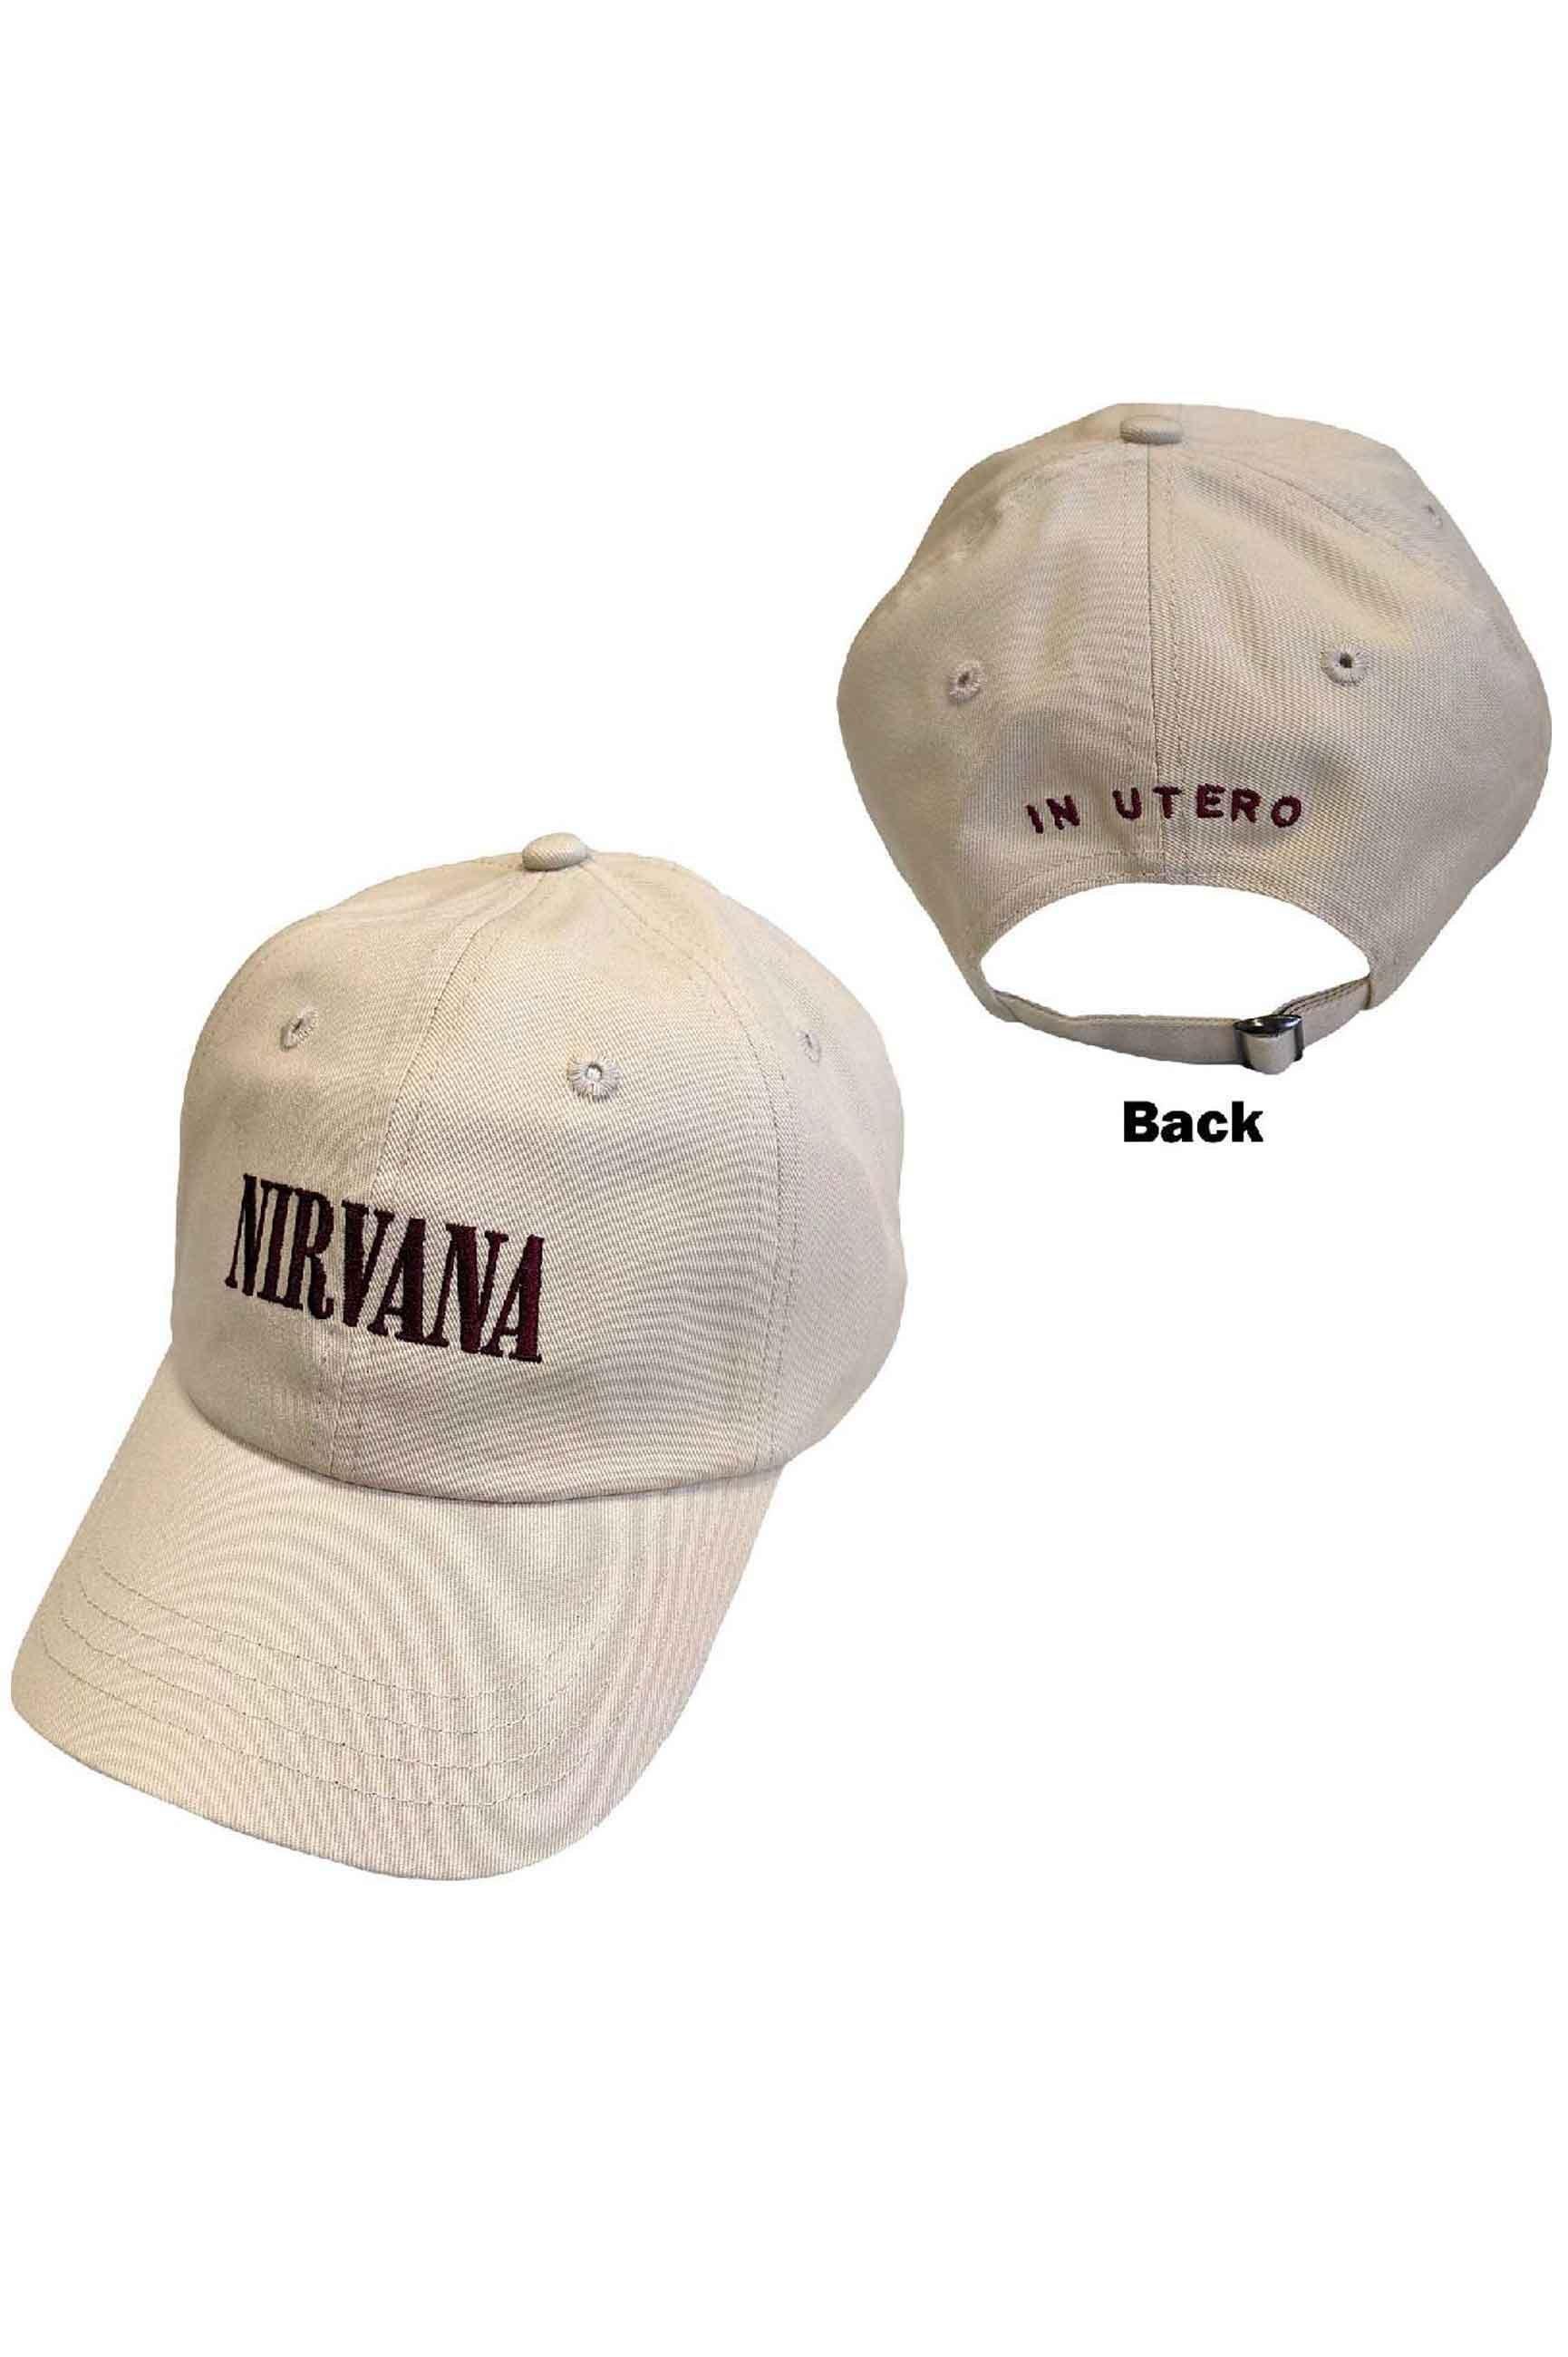 Бейсбольная кепка с текстовым ремешком и логотипом Nirvana, коричневый